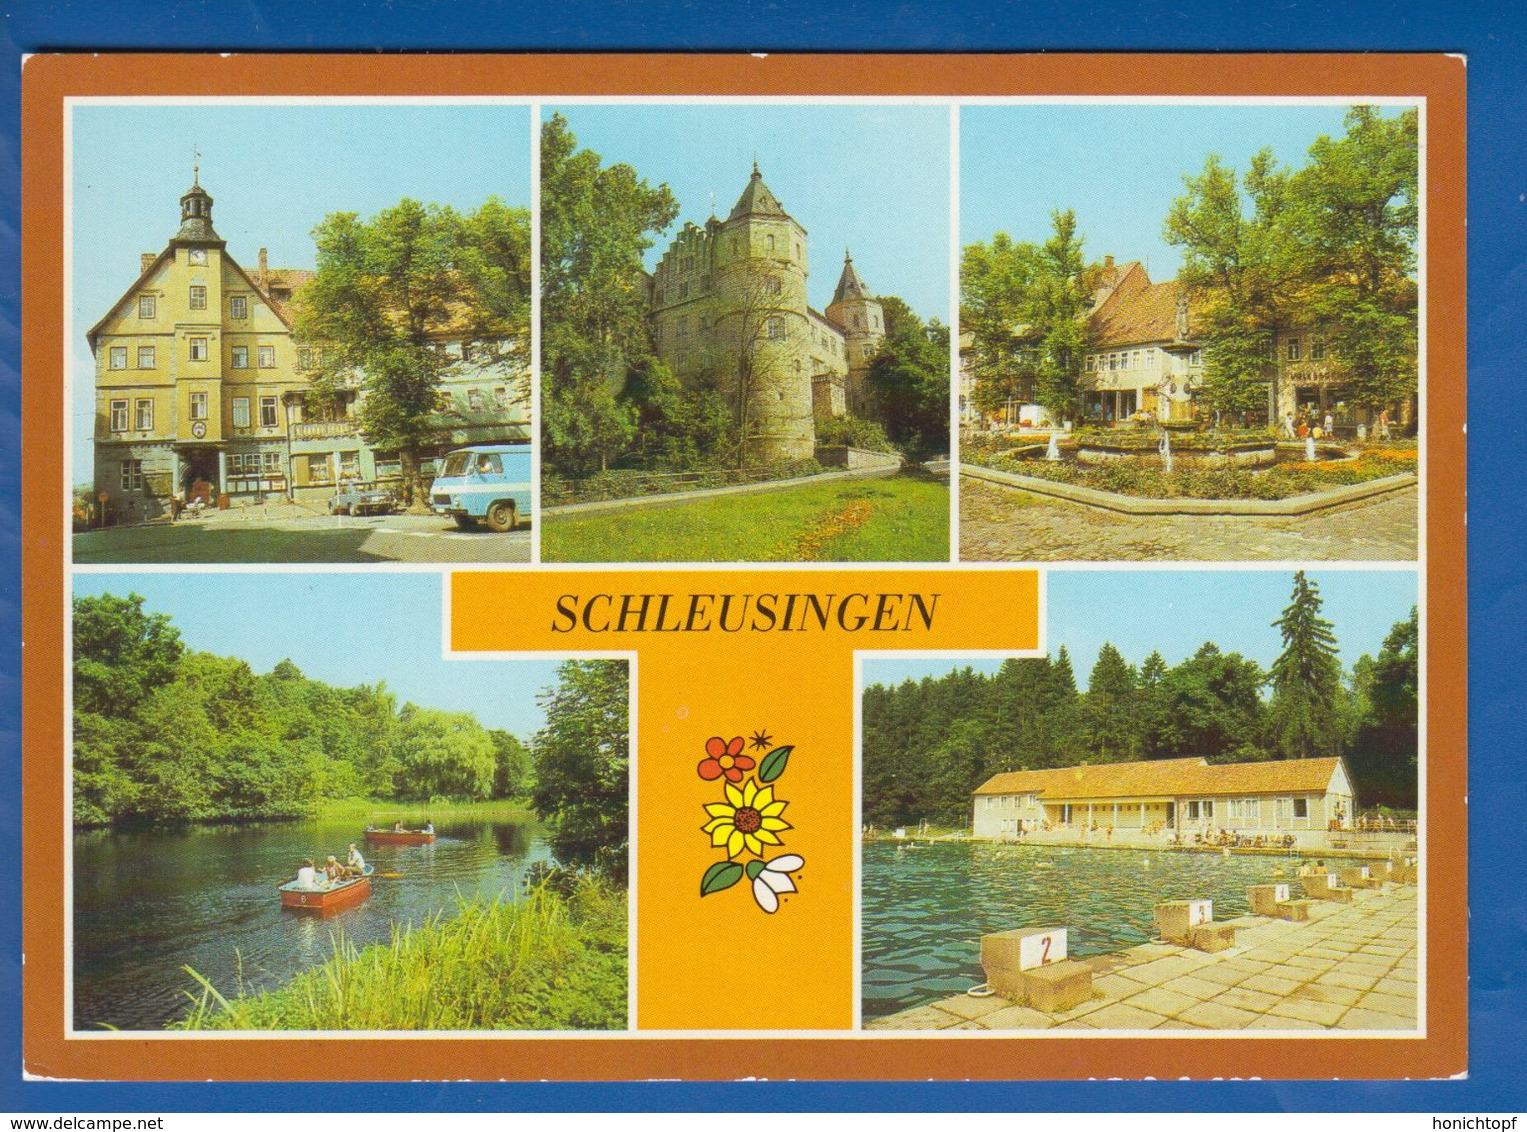 Deutschland; Schleusingen; Multibildkarte; Bild1 - Schleusingen